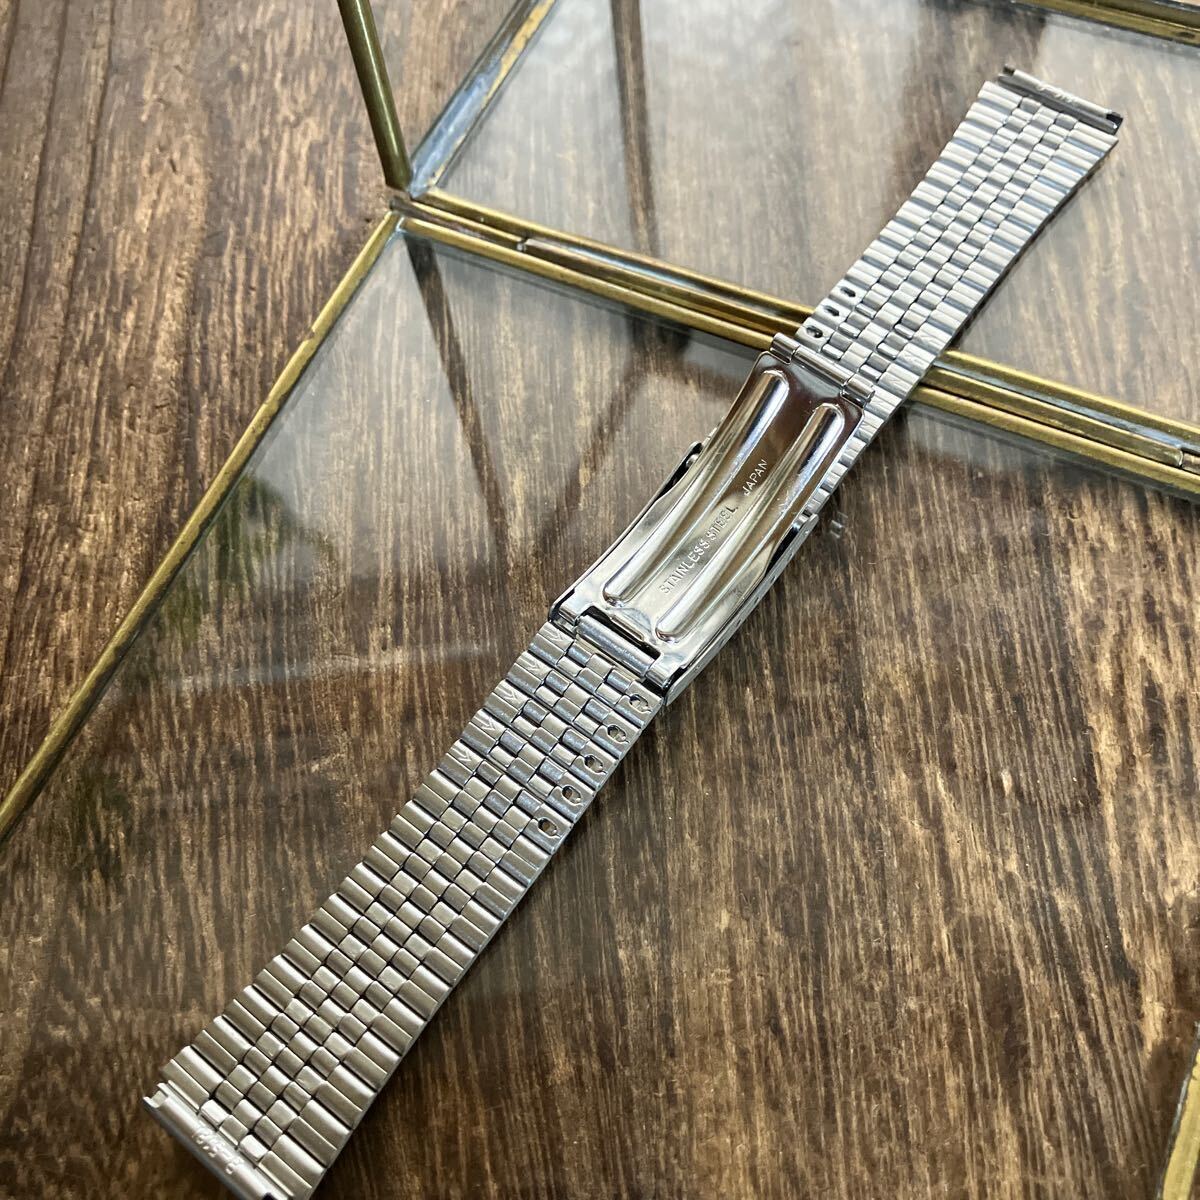 18mm серебряный цвет три поломка часы ремень часы частота б/у товар металл 